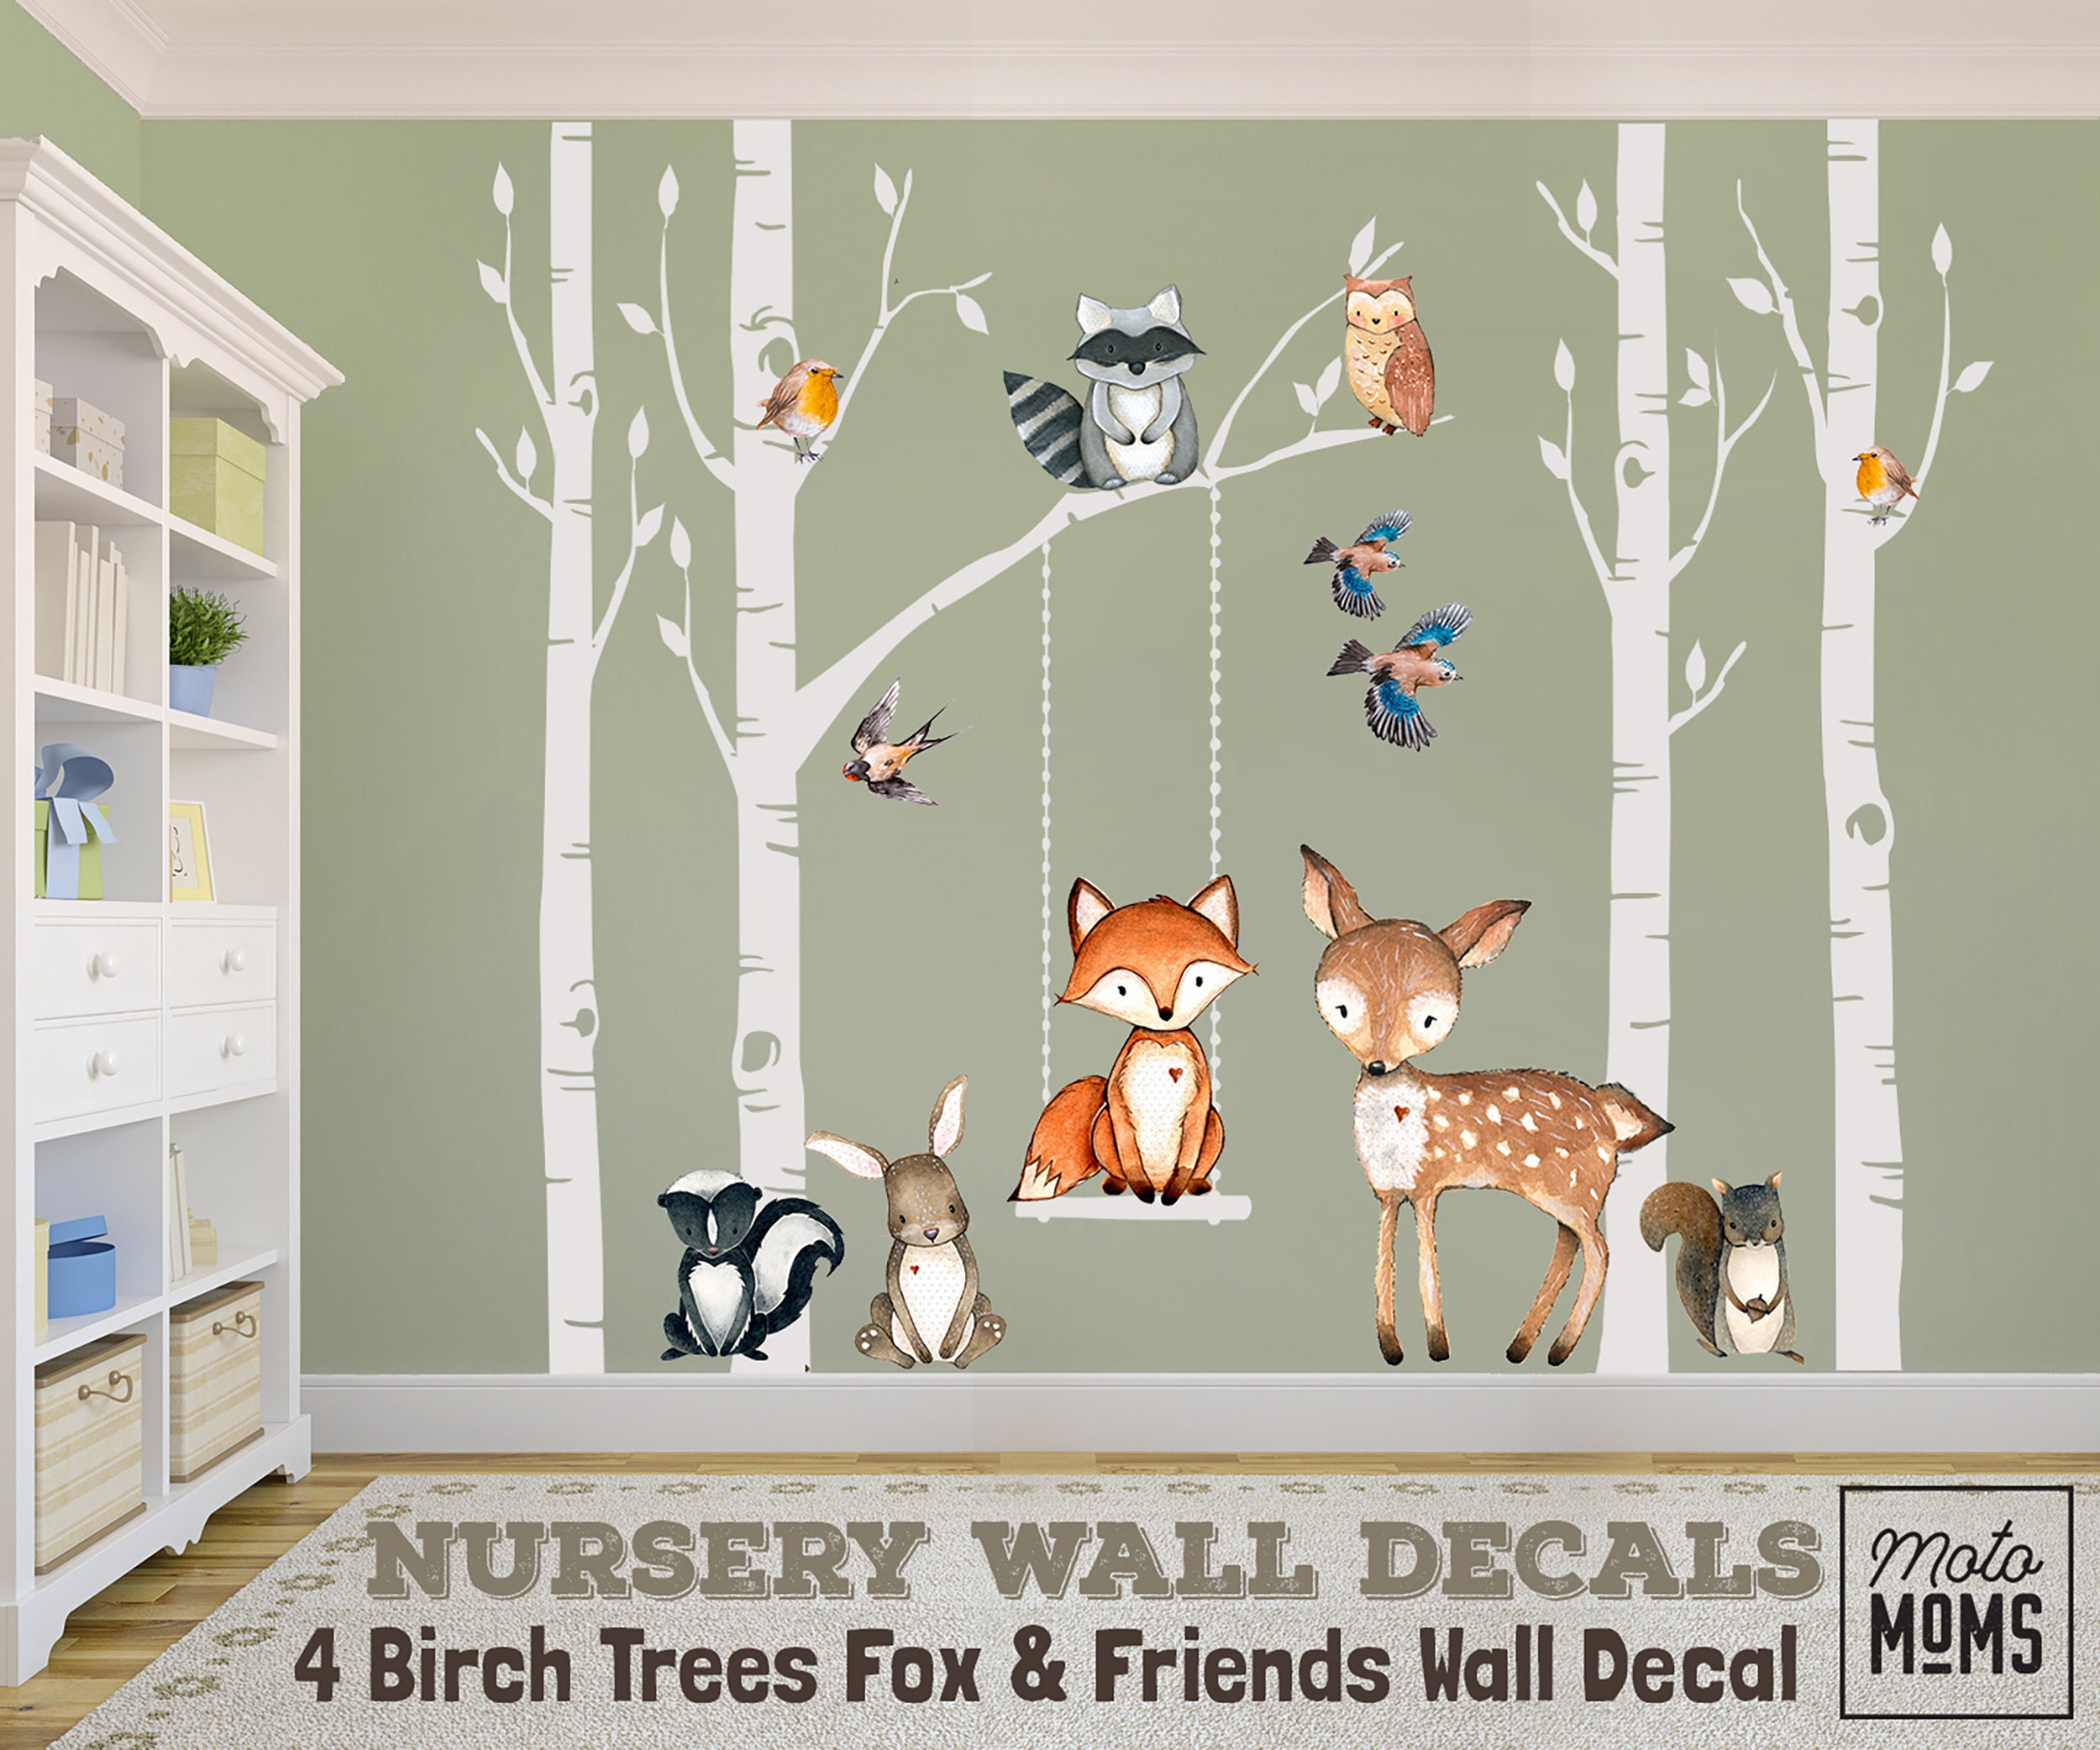 Childrens Room - Wall Decals Nursery Hunting Fishing Deer Baby